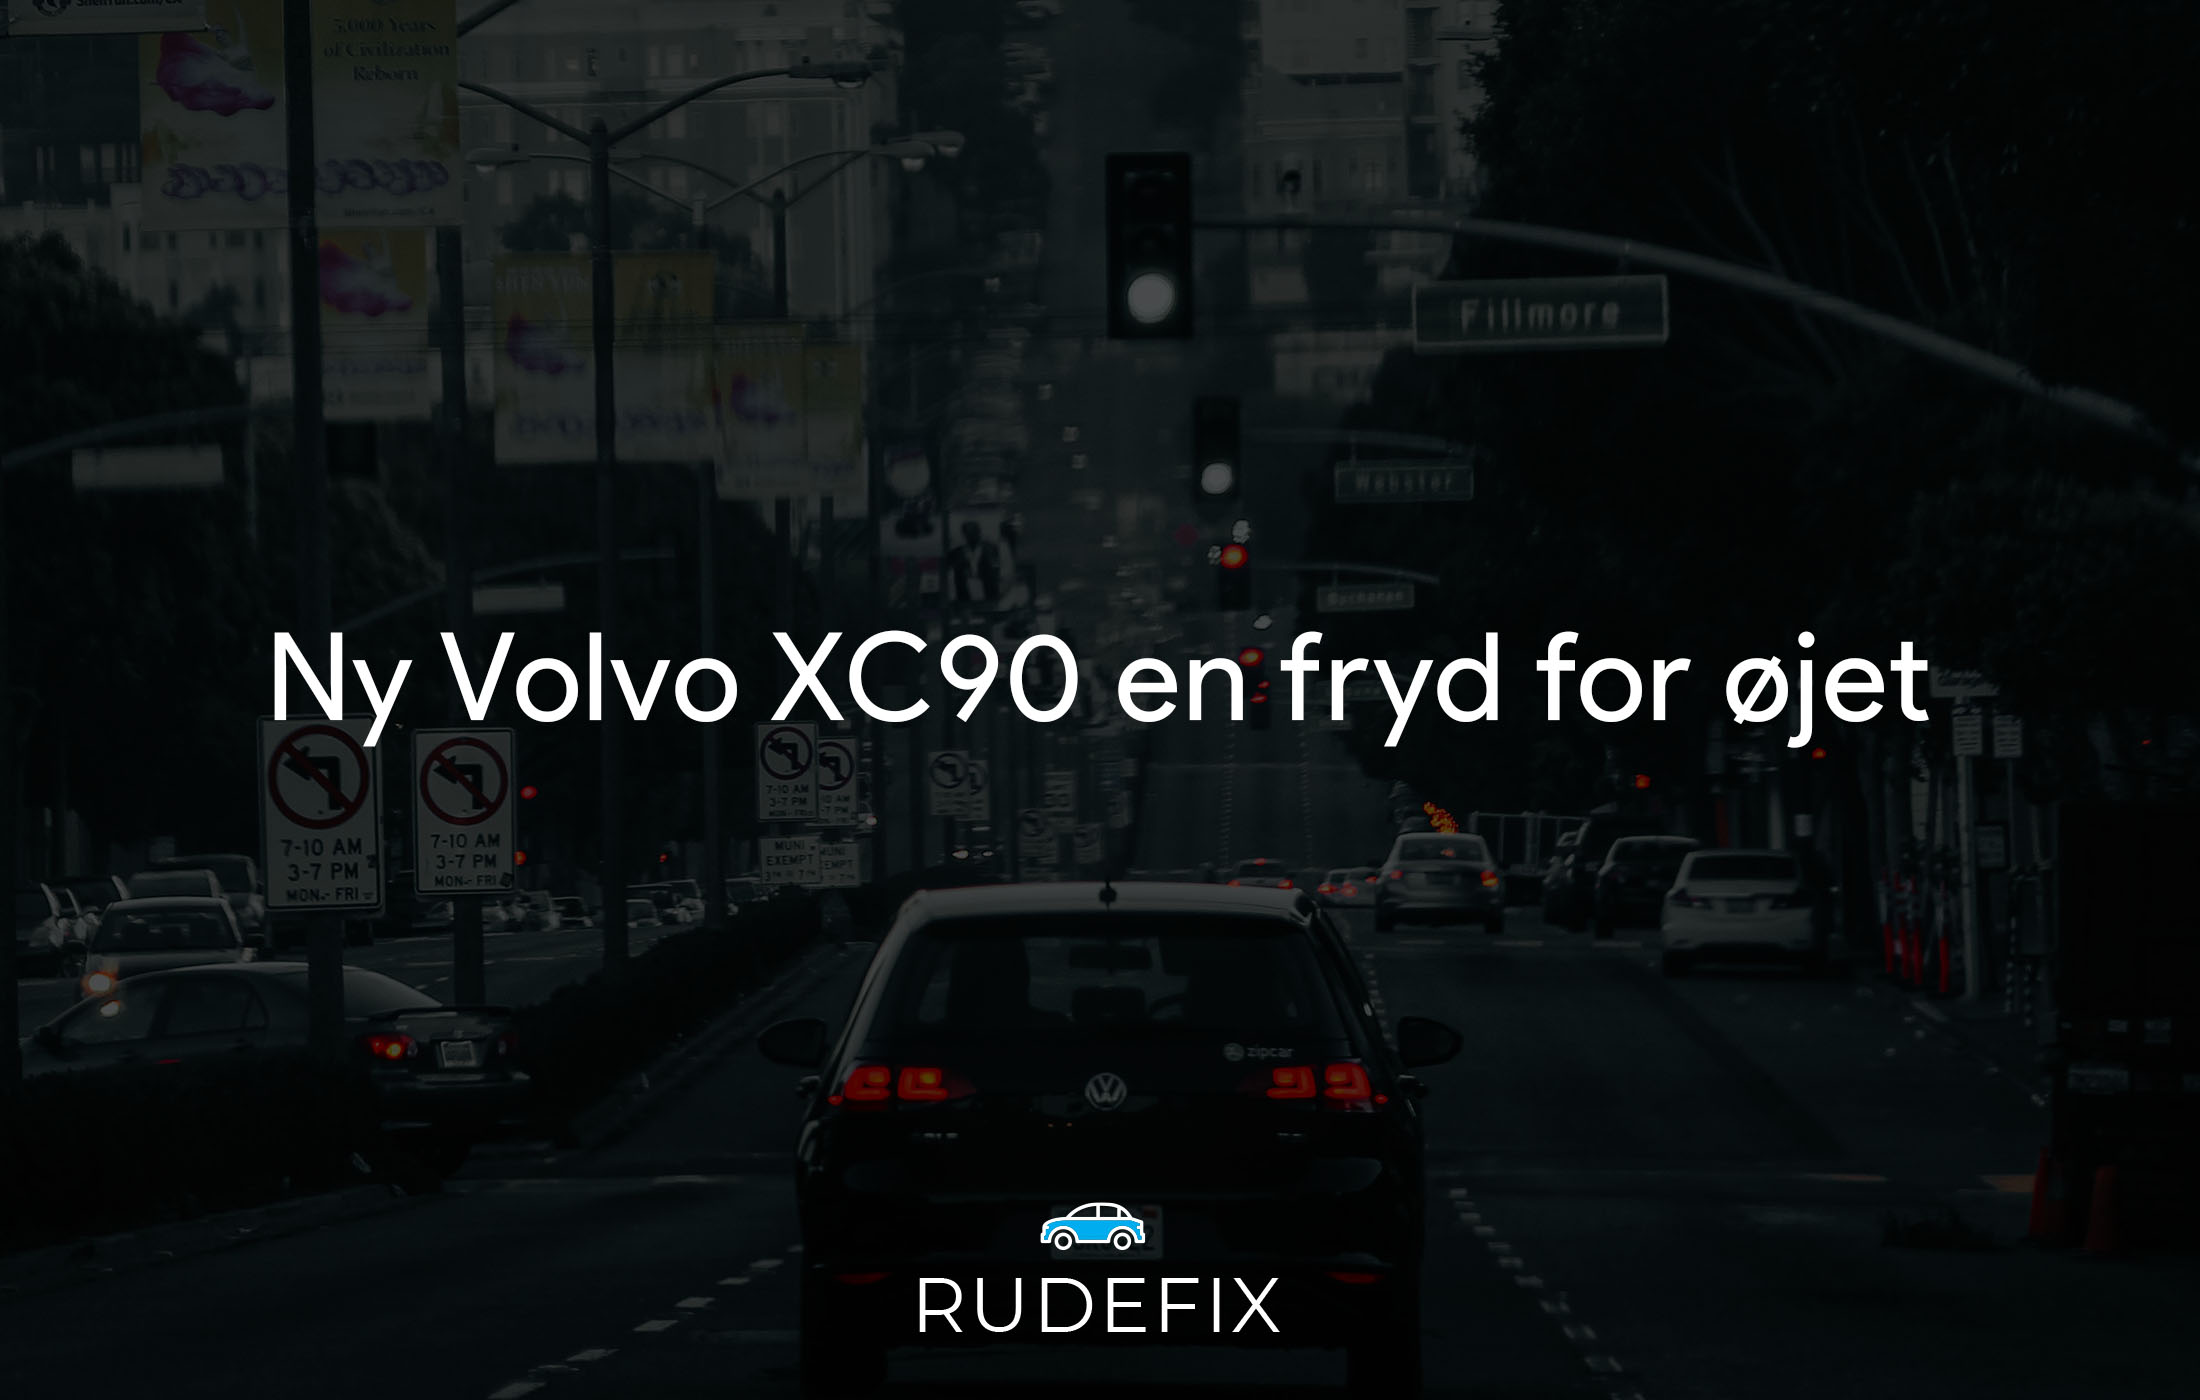 Ny Volvo XC90 en fryd for øjet - forrude information